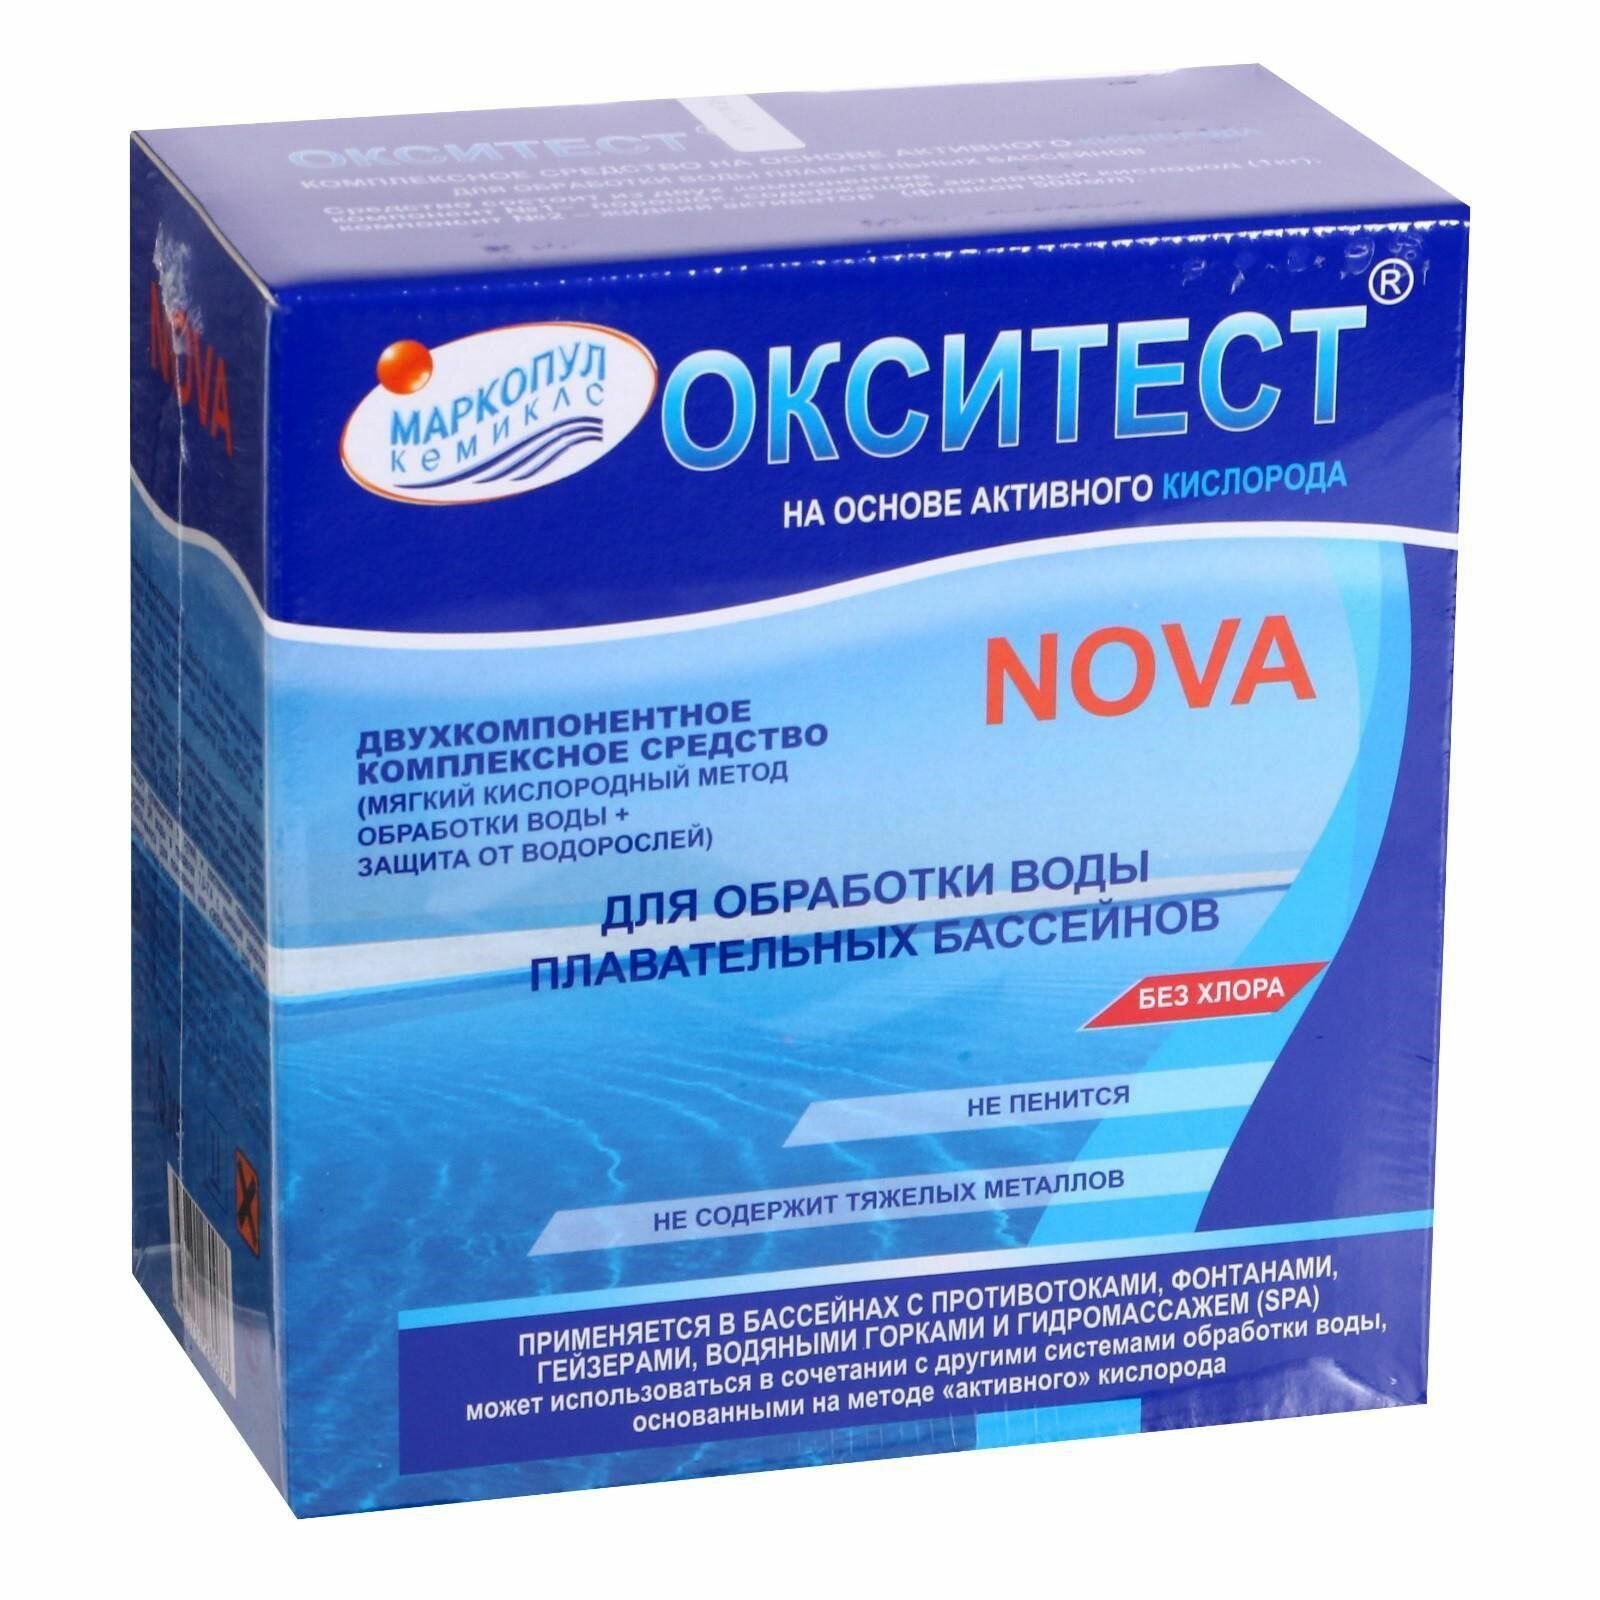 Окситест Нова - Активный кислород для дезинфекции воды в бассейне, без хлора, коробка1,5 кг.